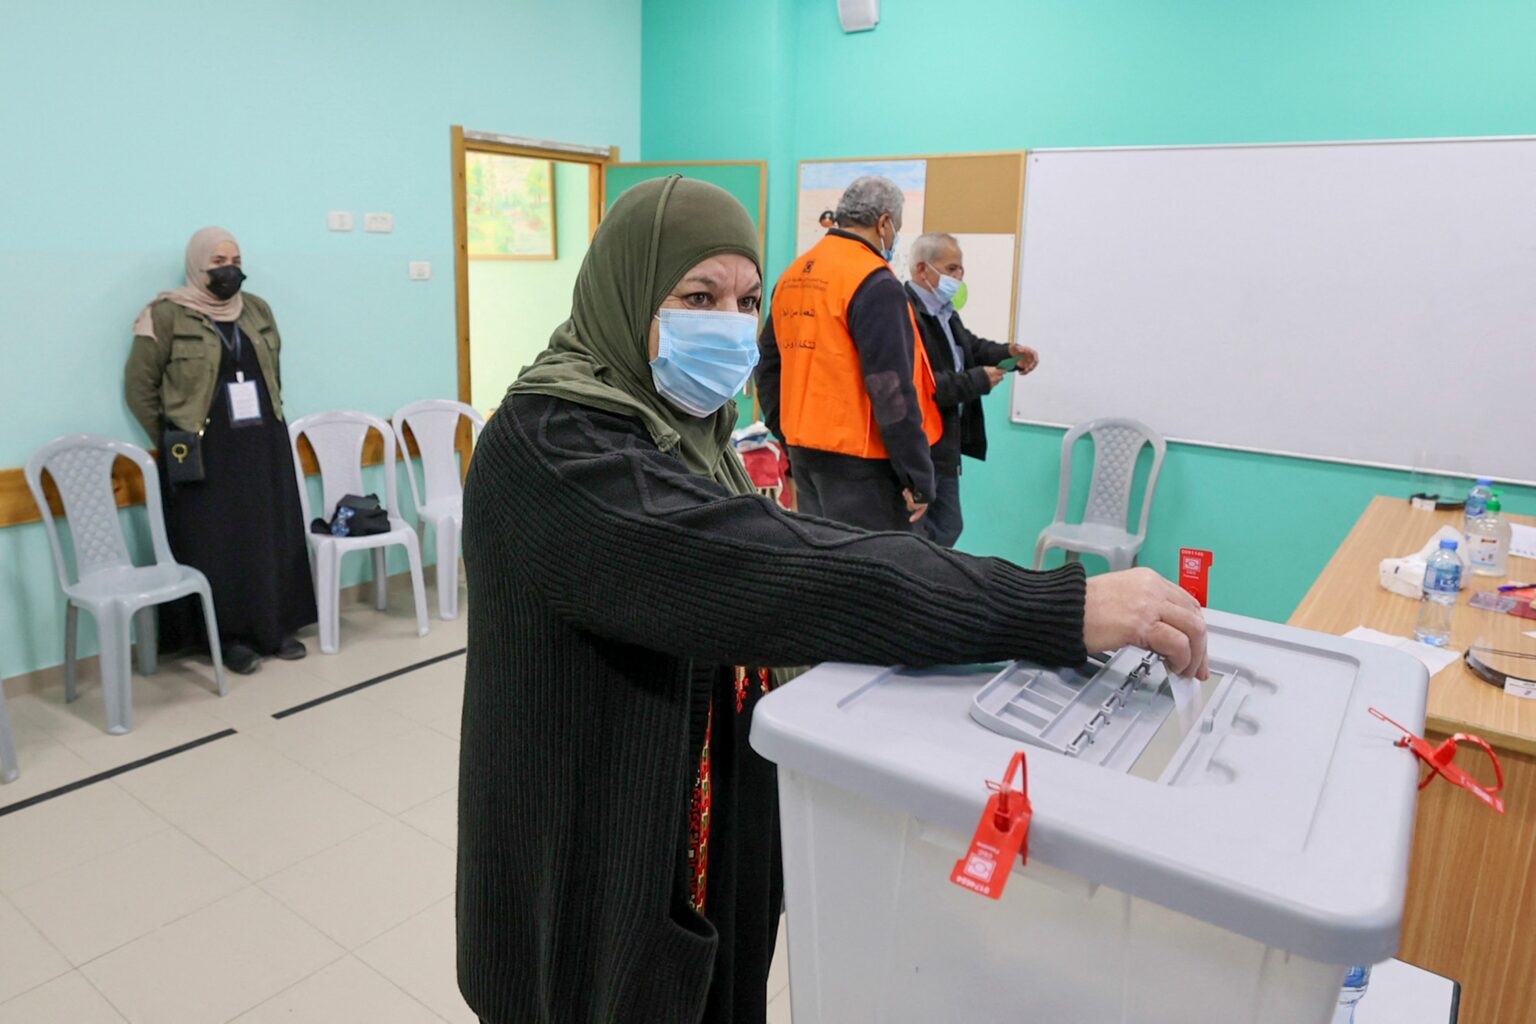 هلال نصّار يكتب: الانتخابات المحلية الفلسطينية 2021 •• بين التـــوافـق الوطني والمـــــزاج السياسي